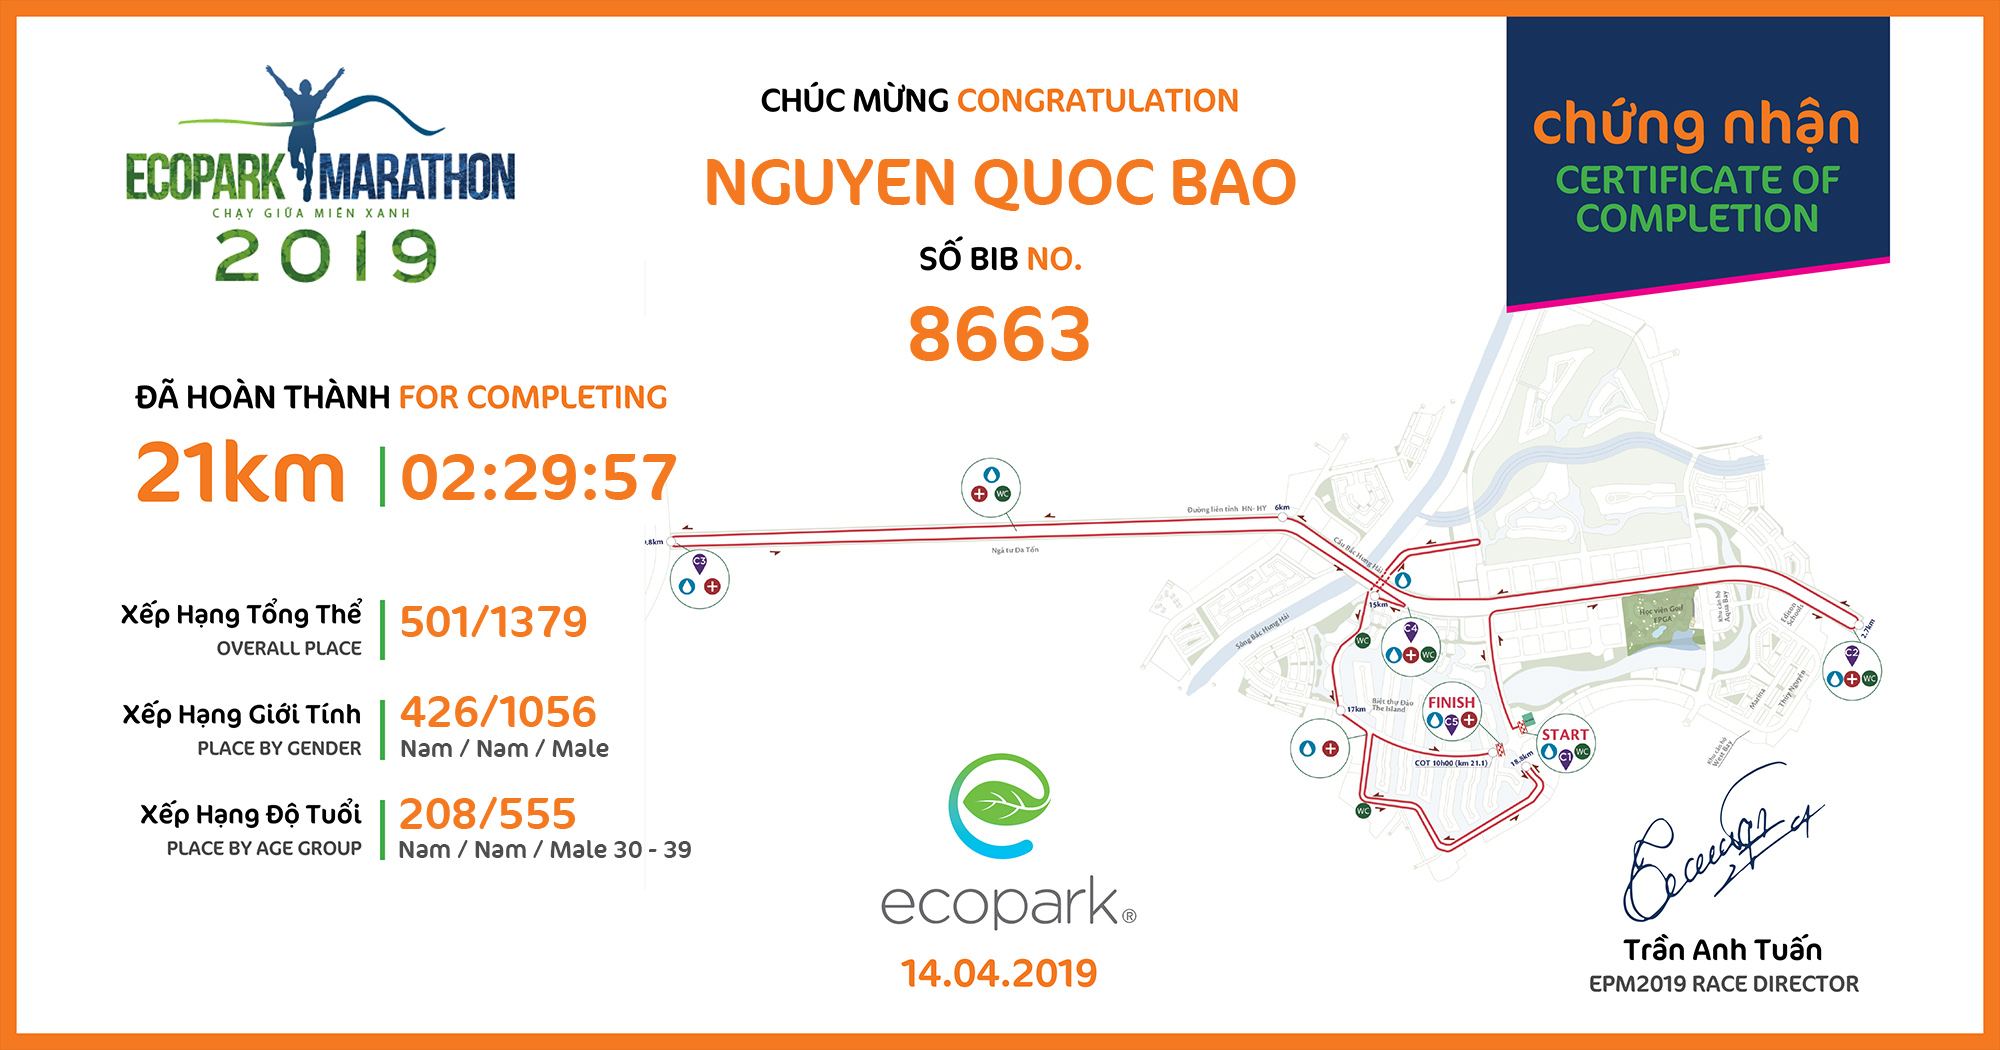 8663 - Nguyen Quoc Bao